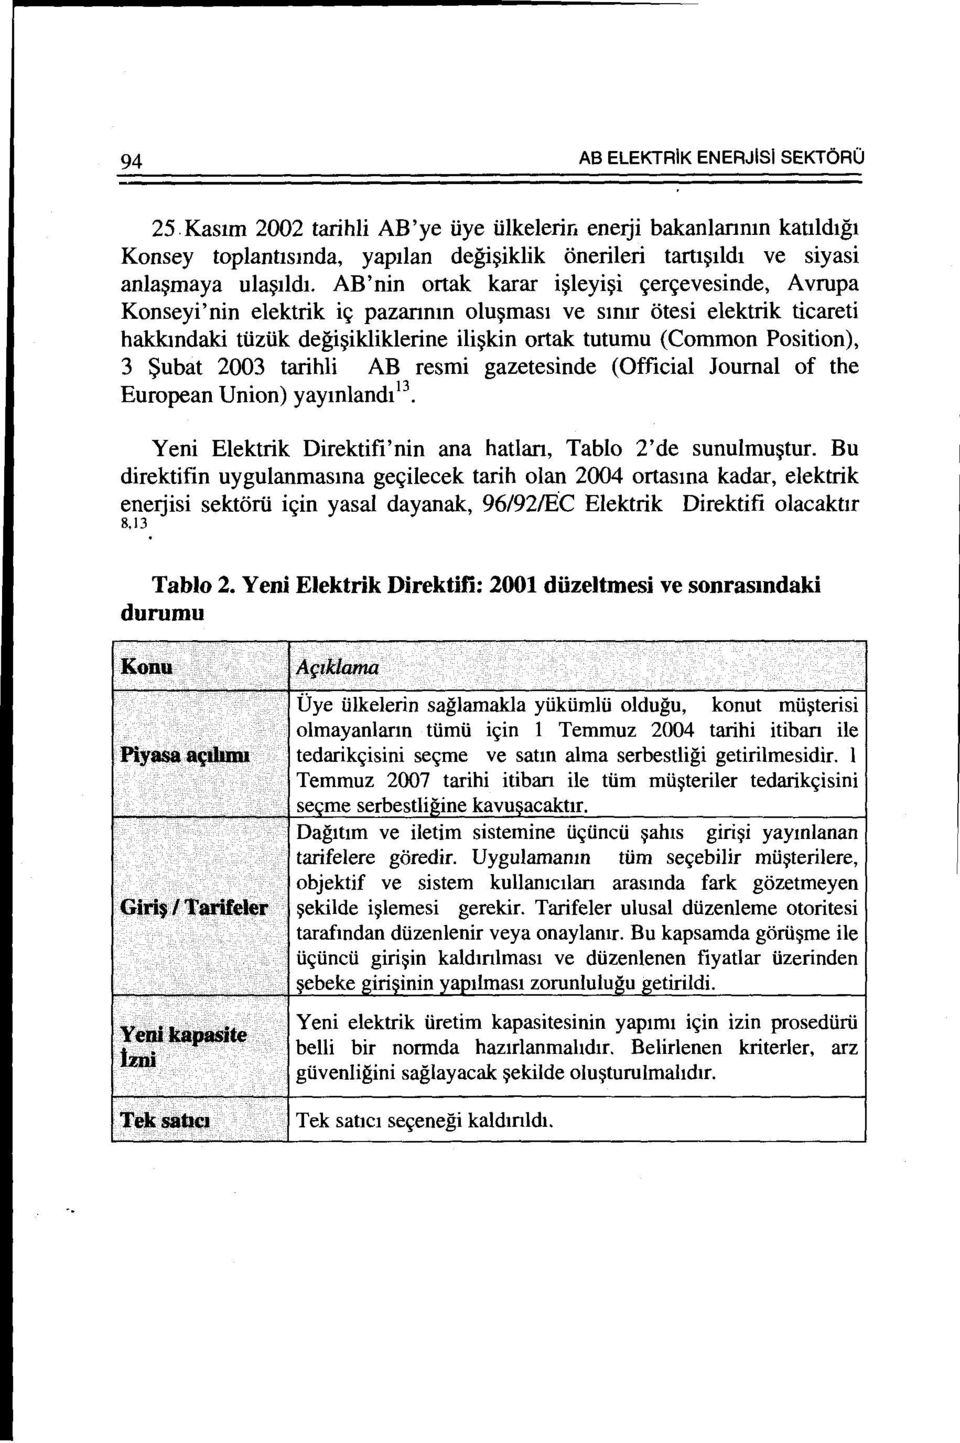 Position), 3 Subat 2003 tarihli AB resmi gazetesinde (Official Journal of the European Union) yaymland1 13 Yeni Elektrik Direktifi'nin ana hatlan, Tablo 2'de sunulmu~tur.